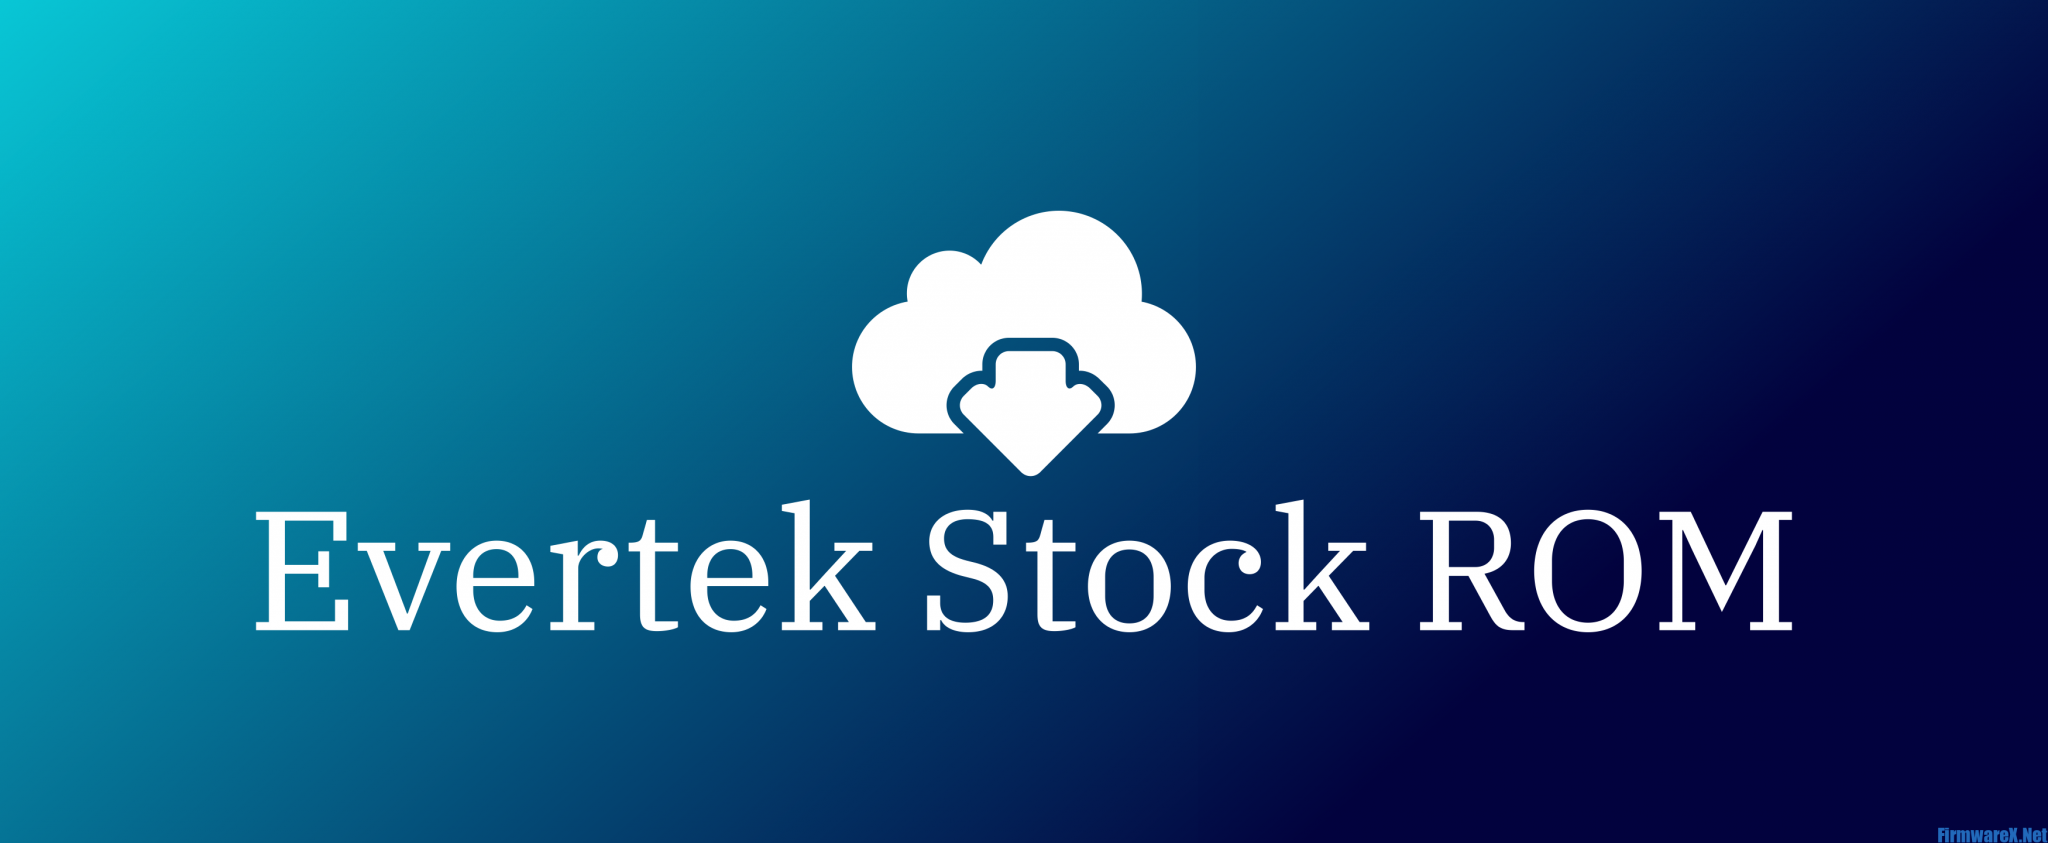 Evertek Stock ROM